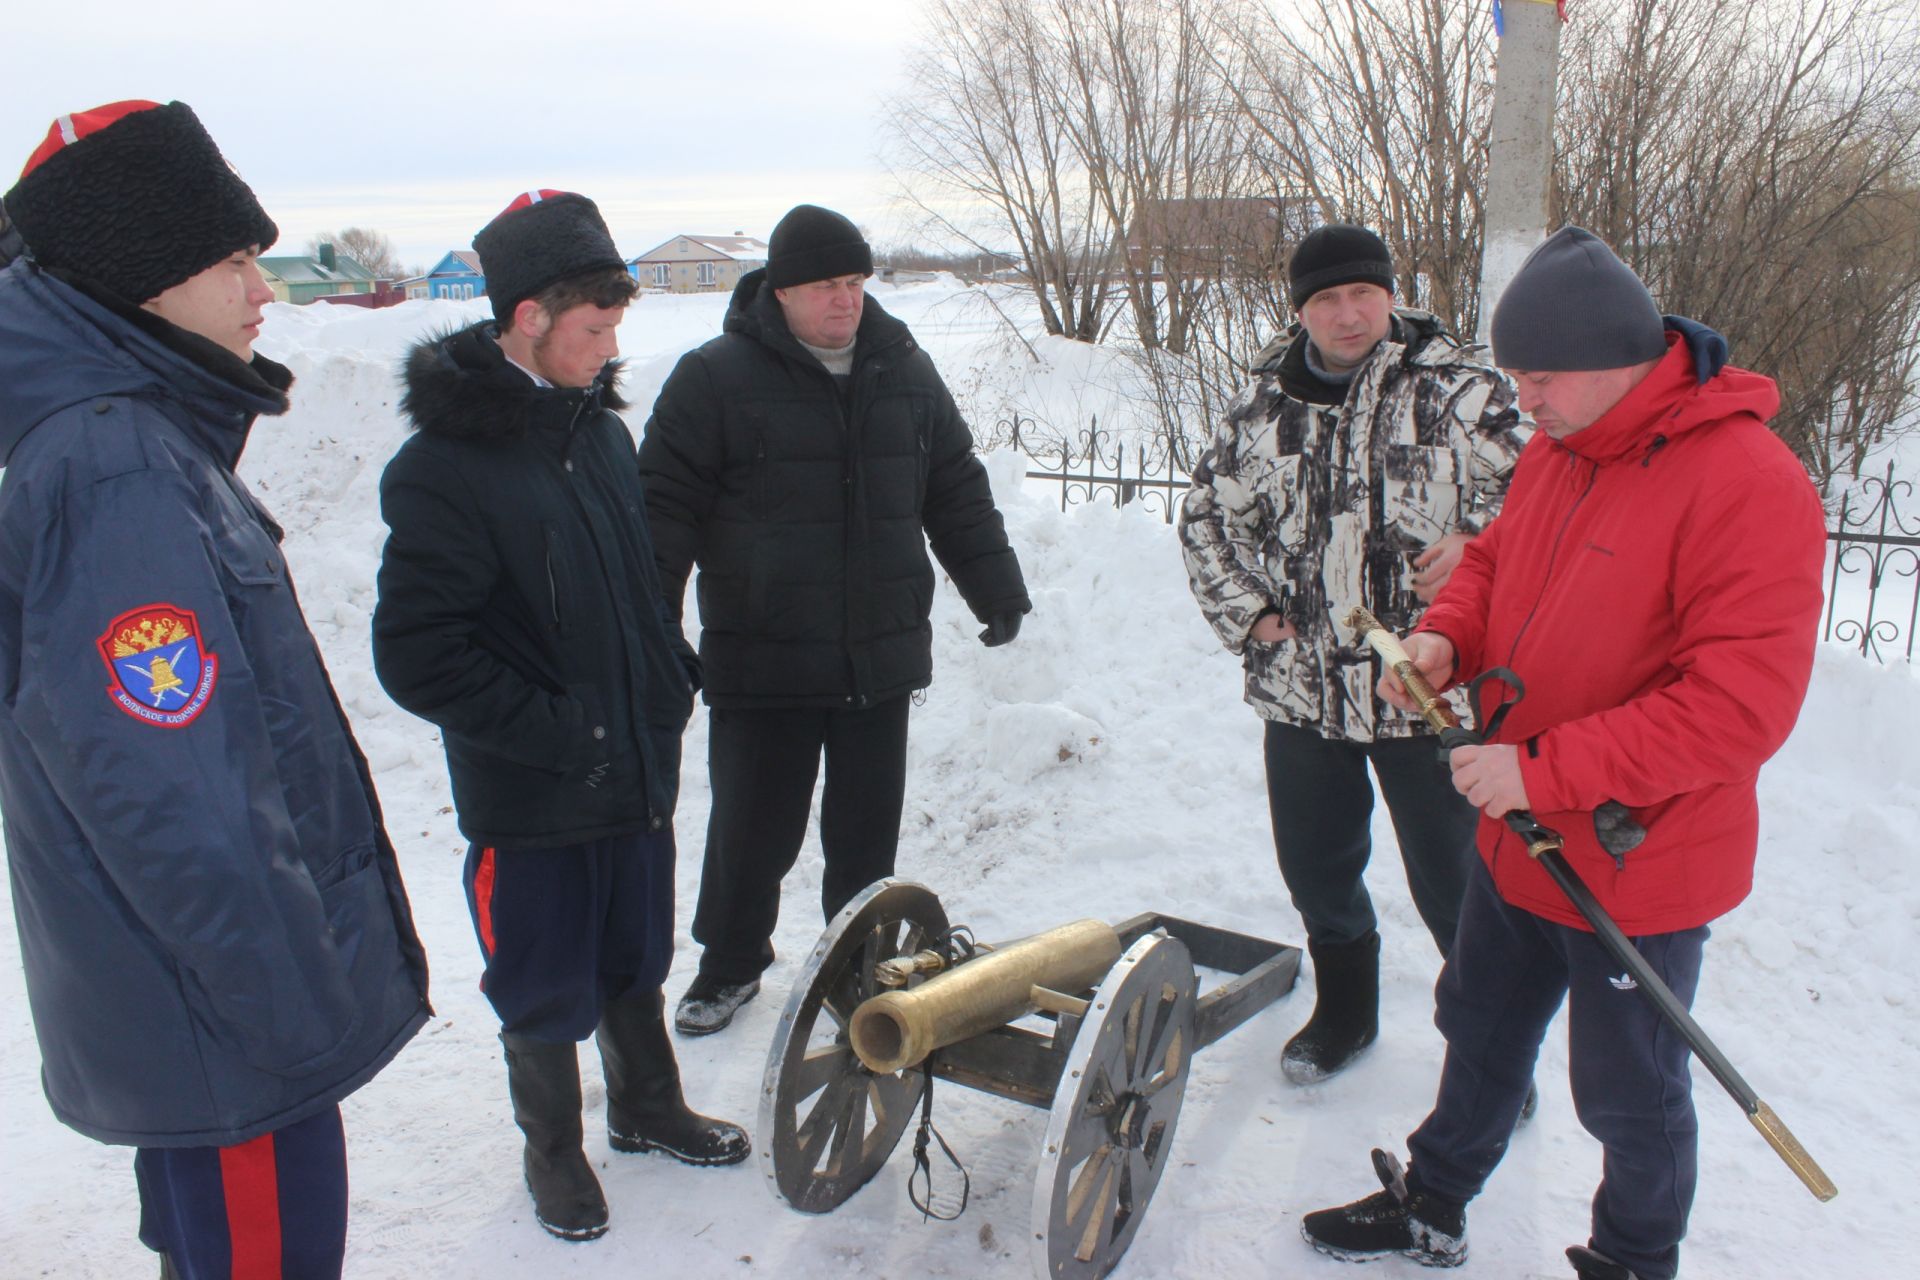 Фестиваль сала и метание валенка - в Куркуле прошли "Снежные забавы".